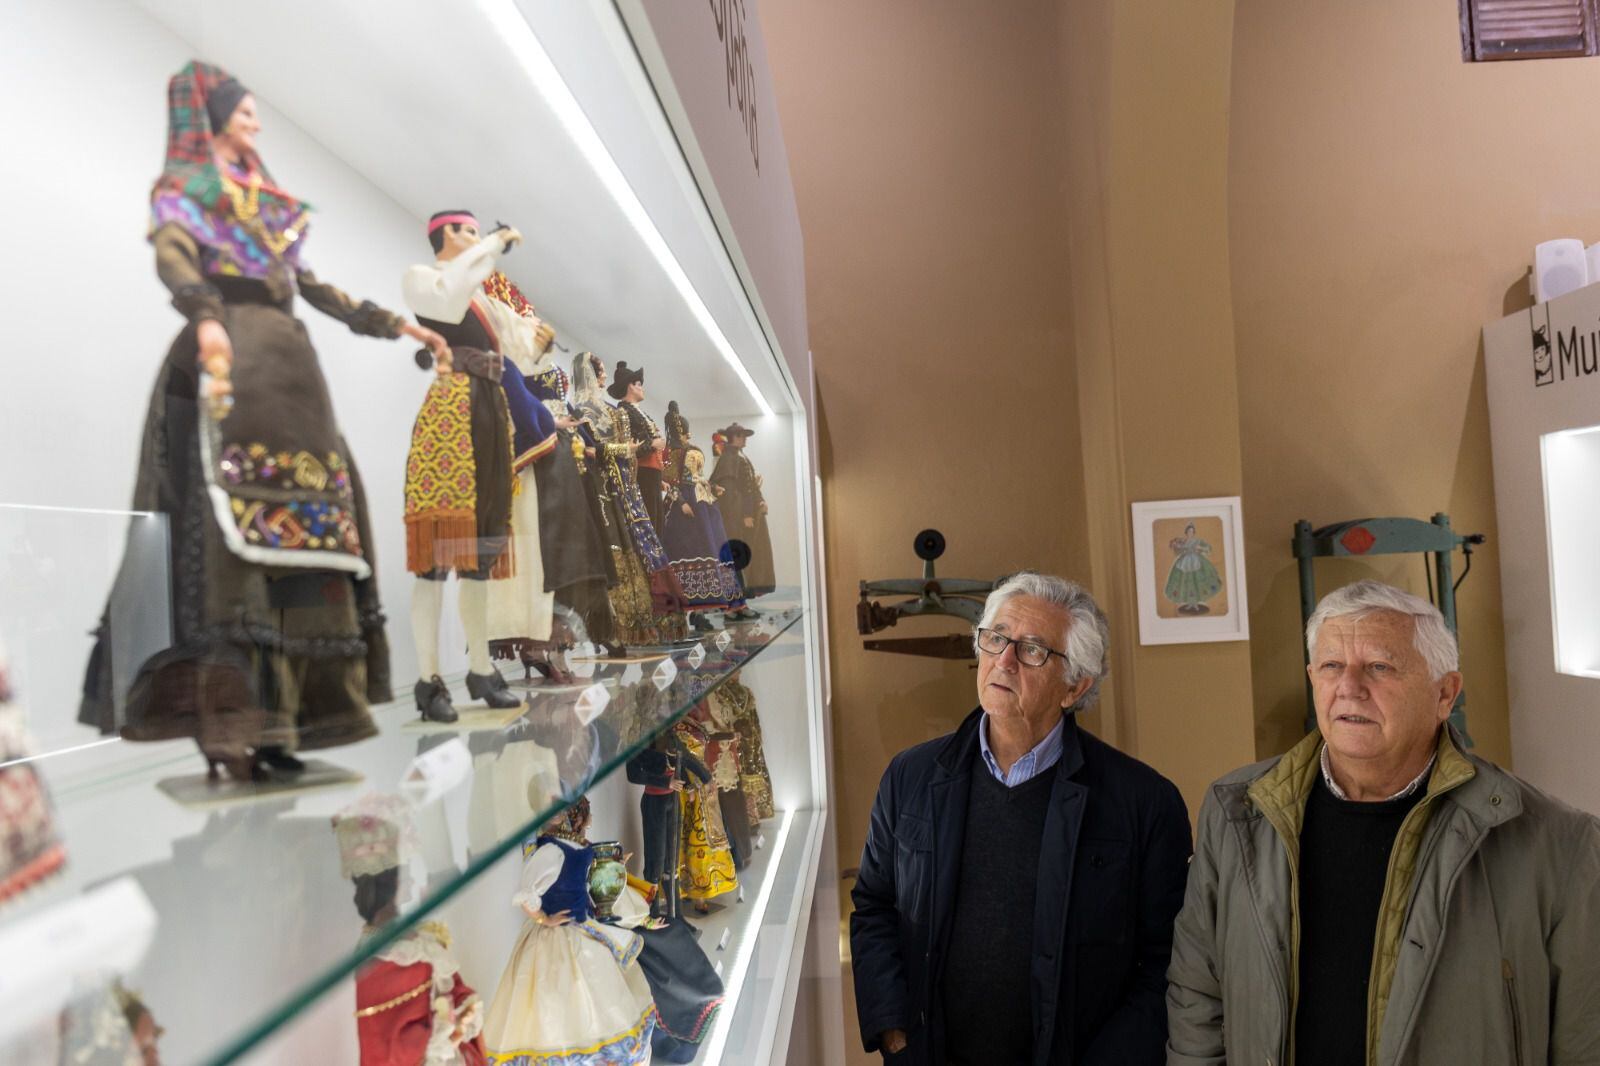 Antonio y Ernesto Marín, hijos del creador de Muñecas Marín, contemplan algunas de las creaciones de la empresa Muñecas Marín que se exponen en Chiclana.